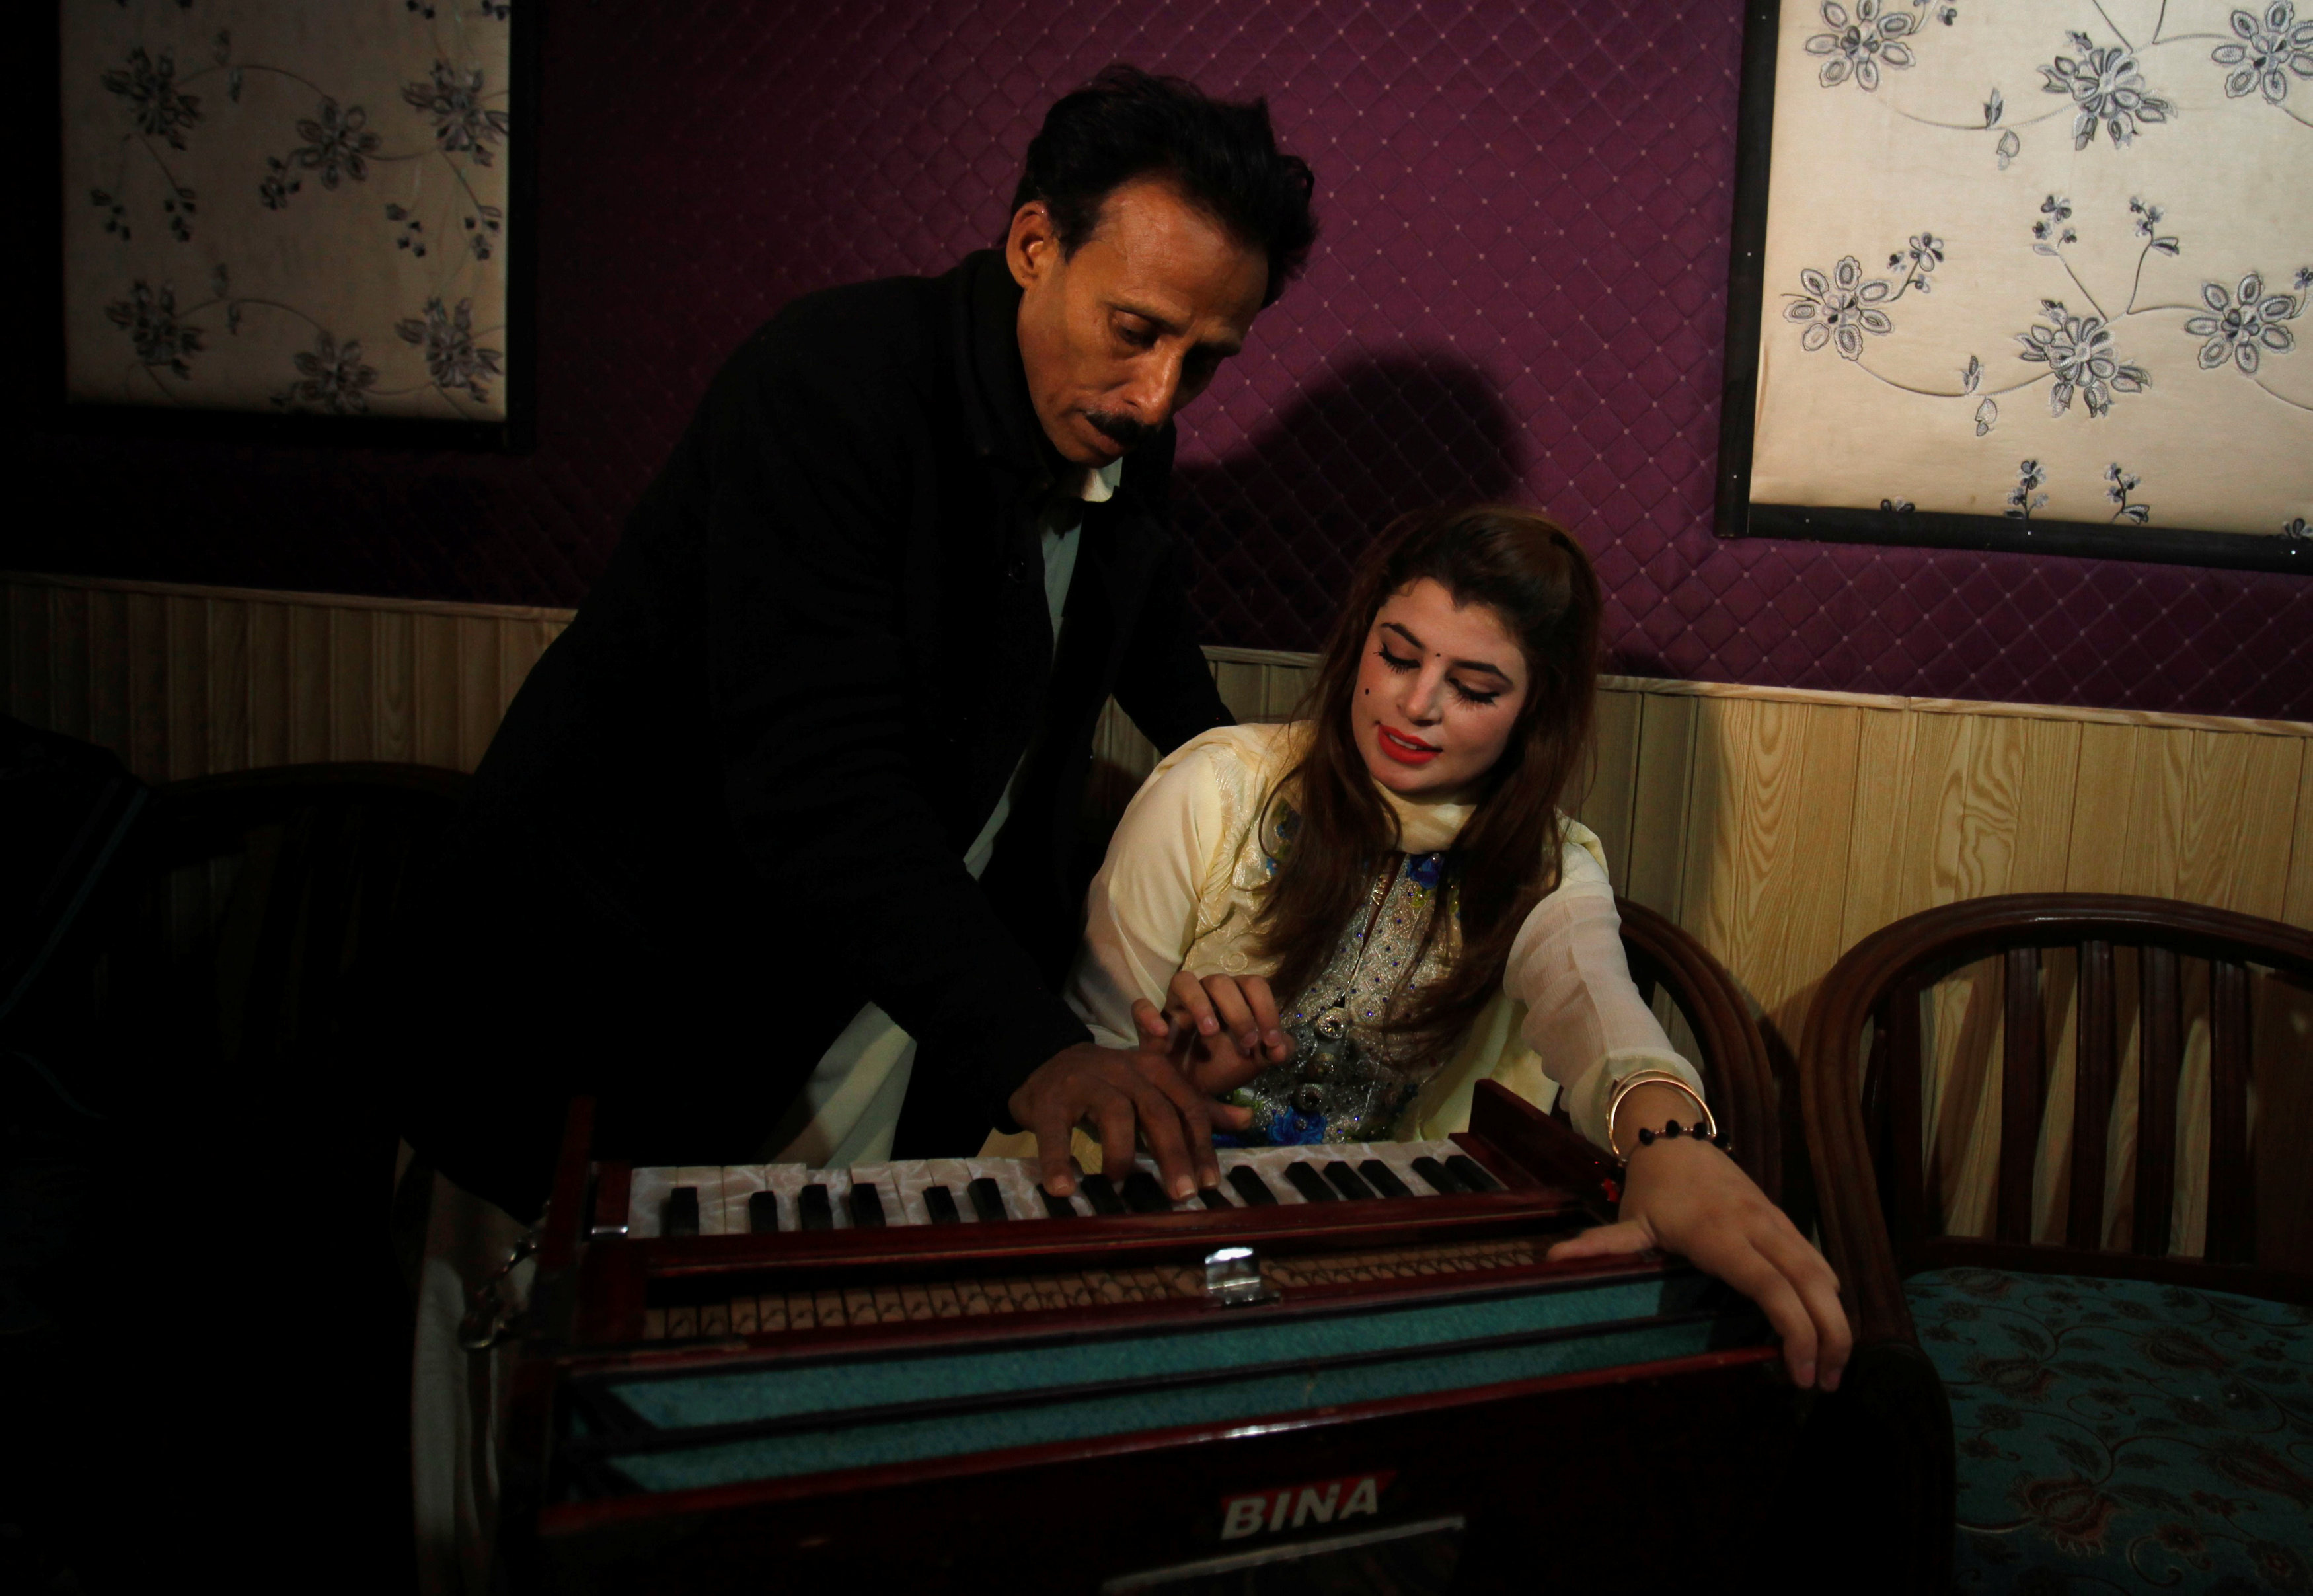 Pakistan's aspiring young musicians